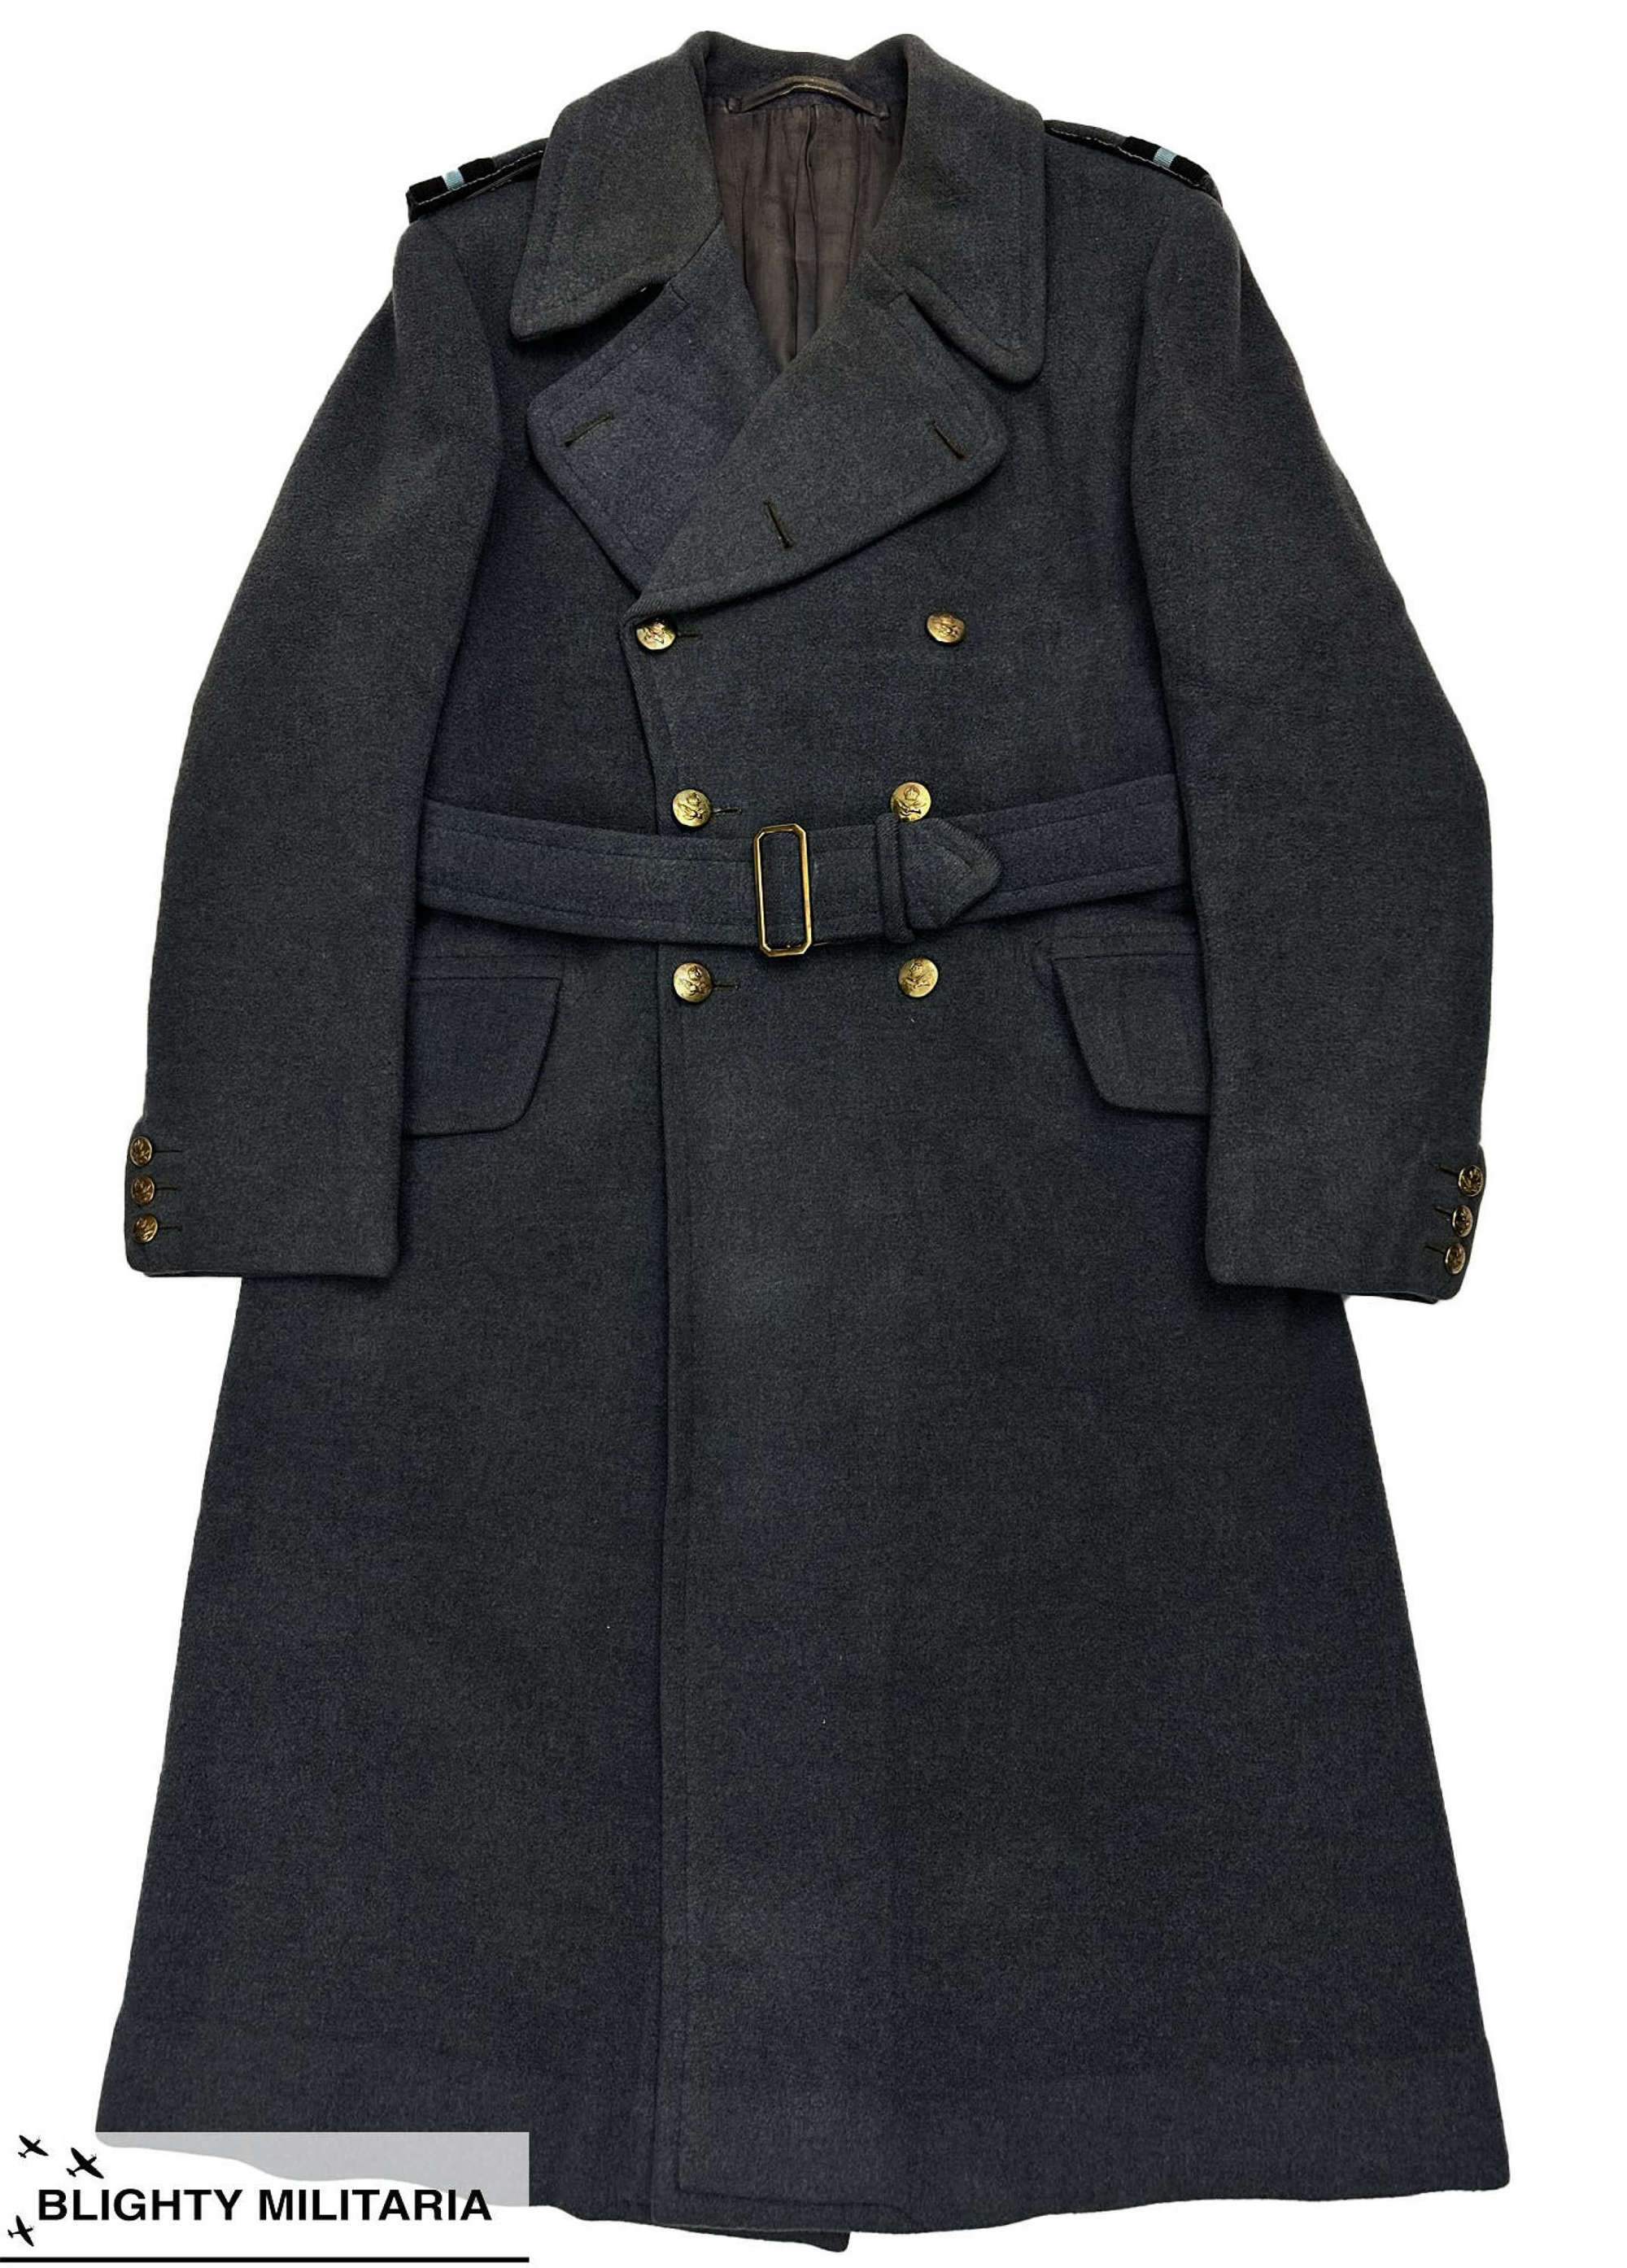 Rare WW2 RAF Air Commodore's Greatcoat